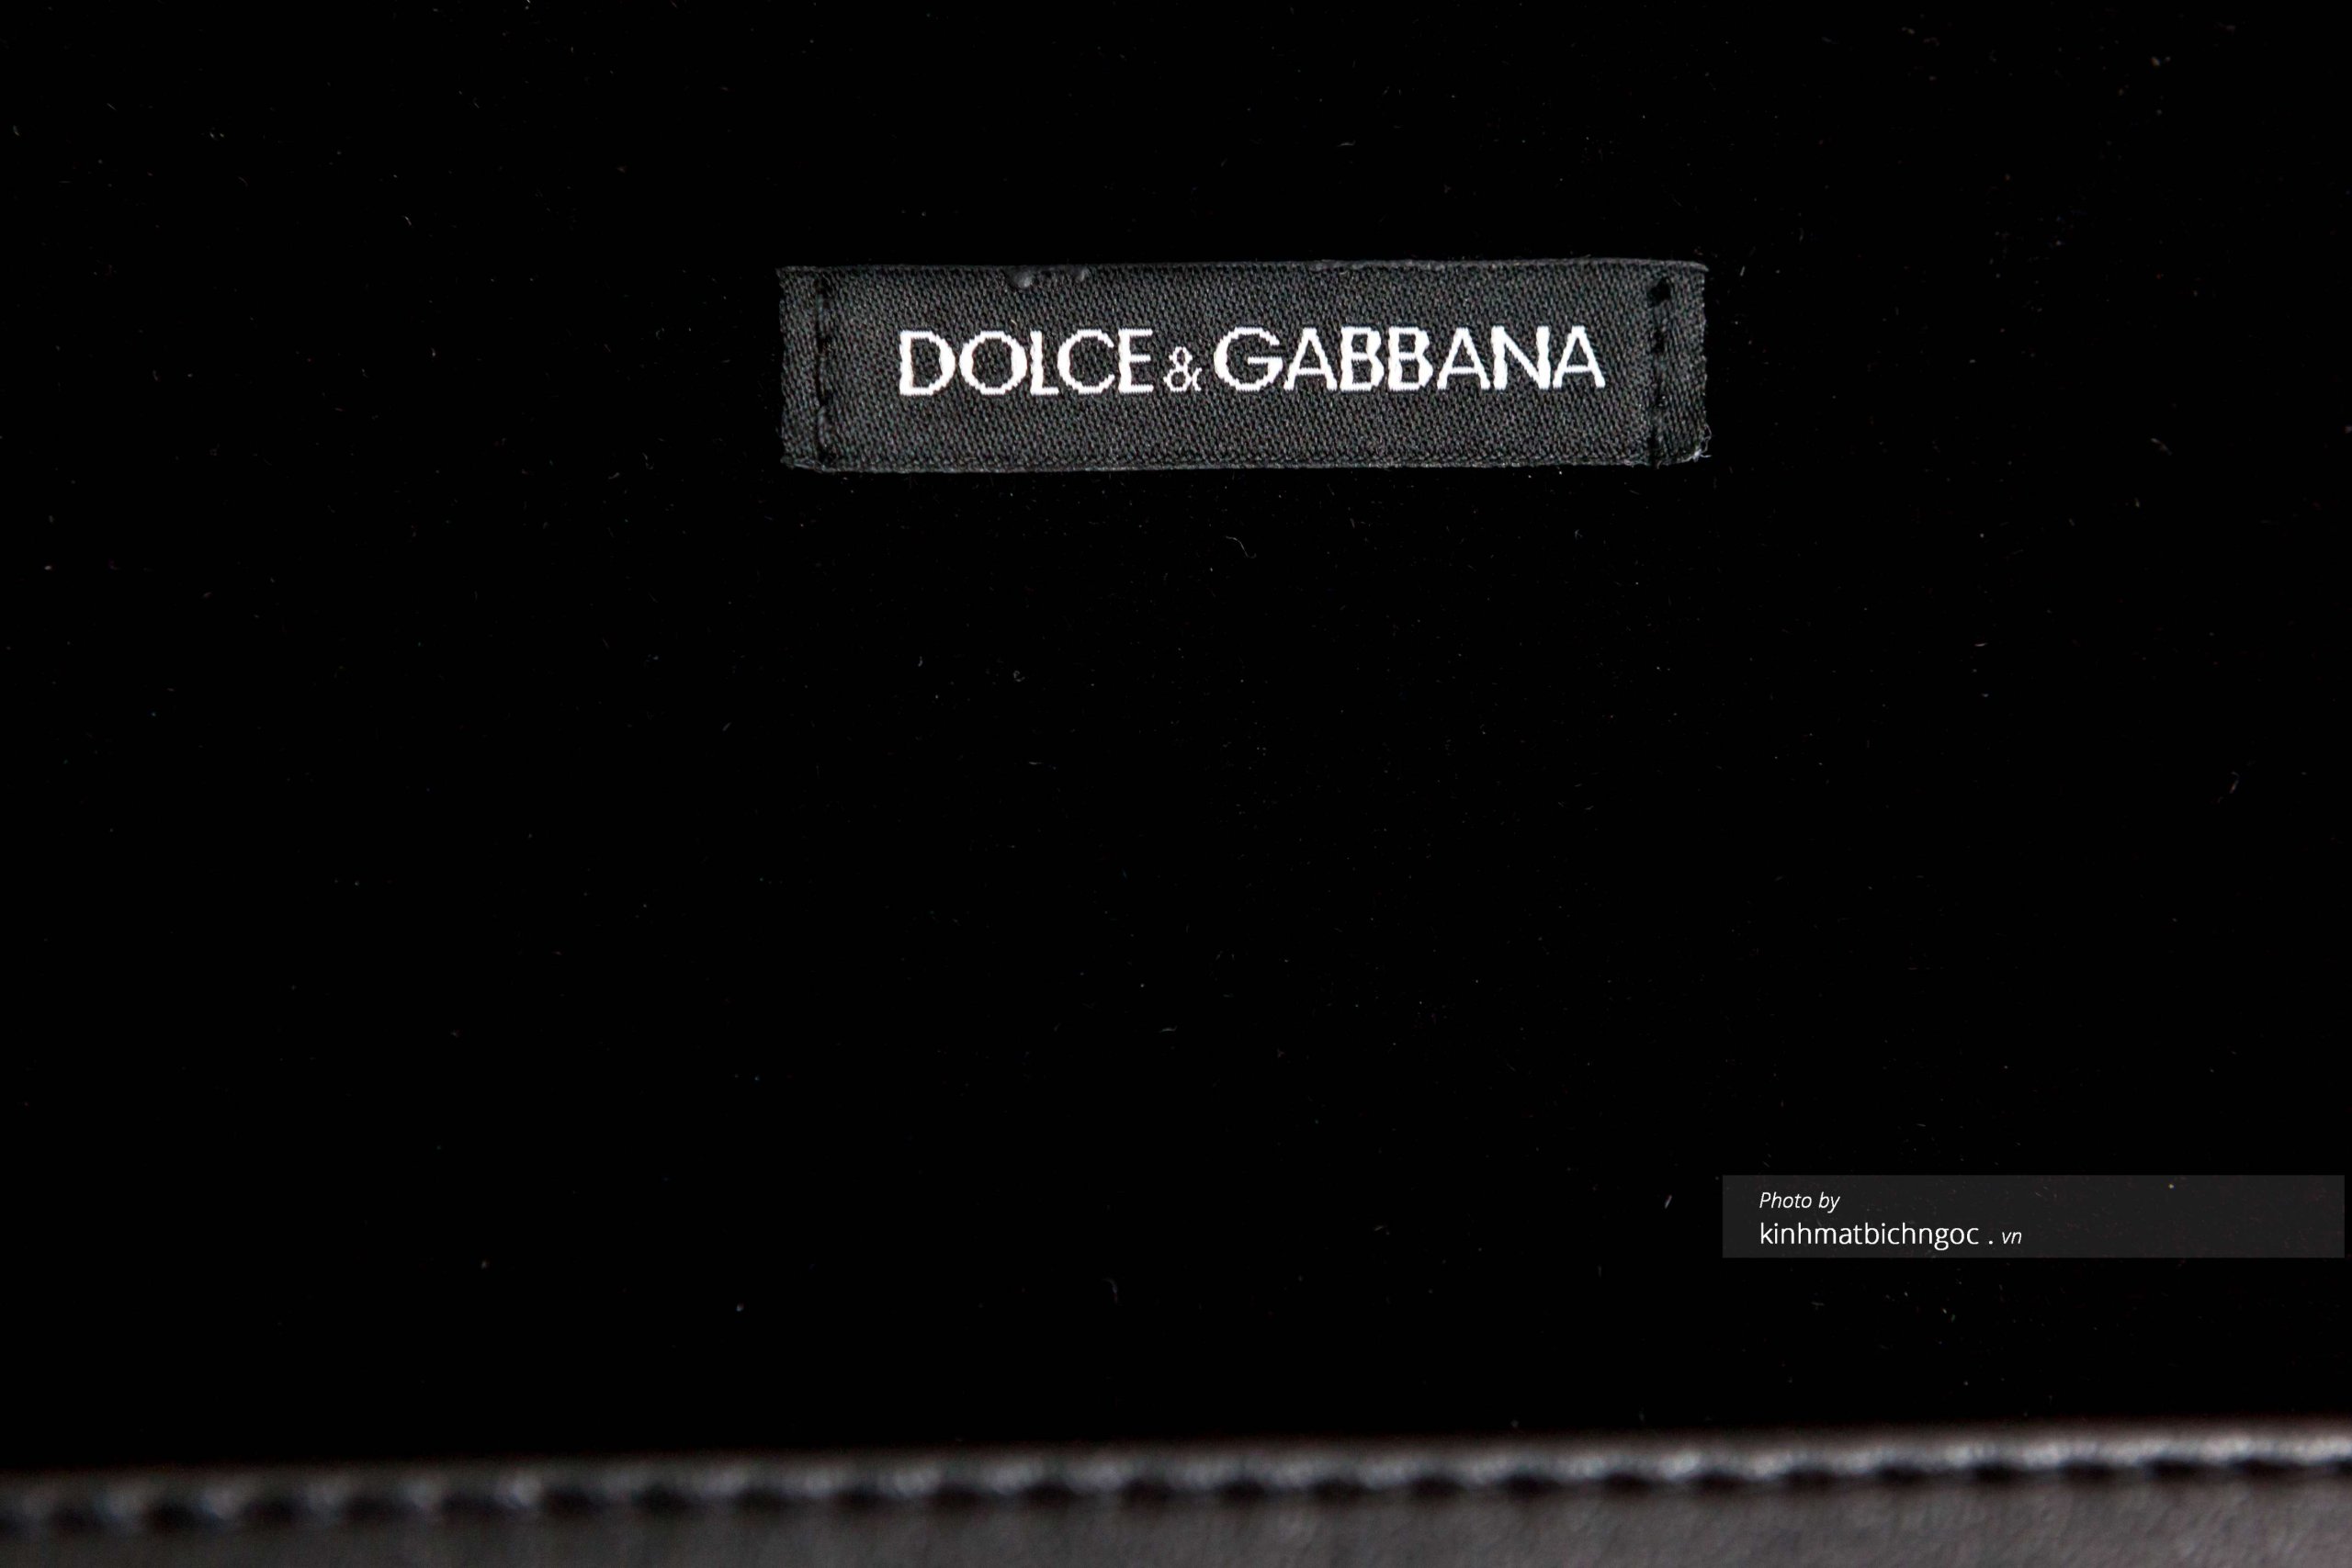 Lớp nhung bên trong hộp kính Dolce Gabbana